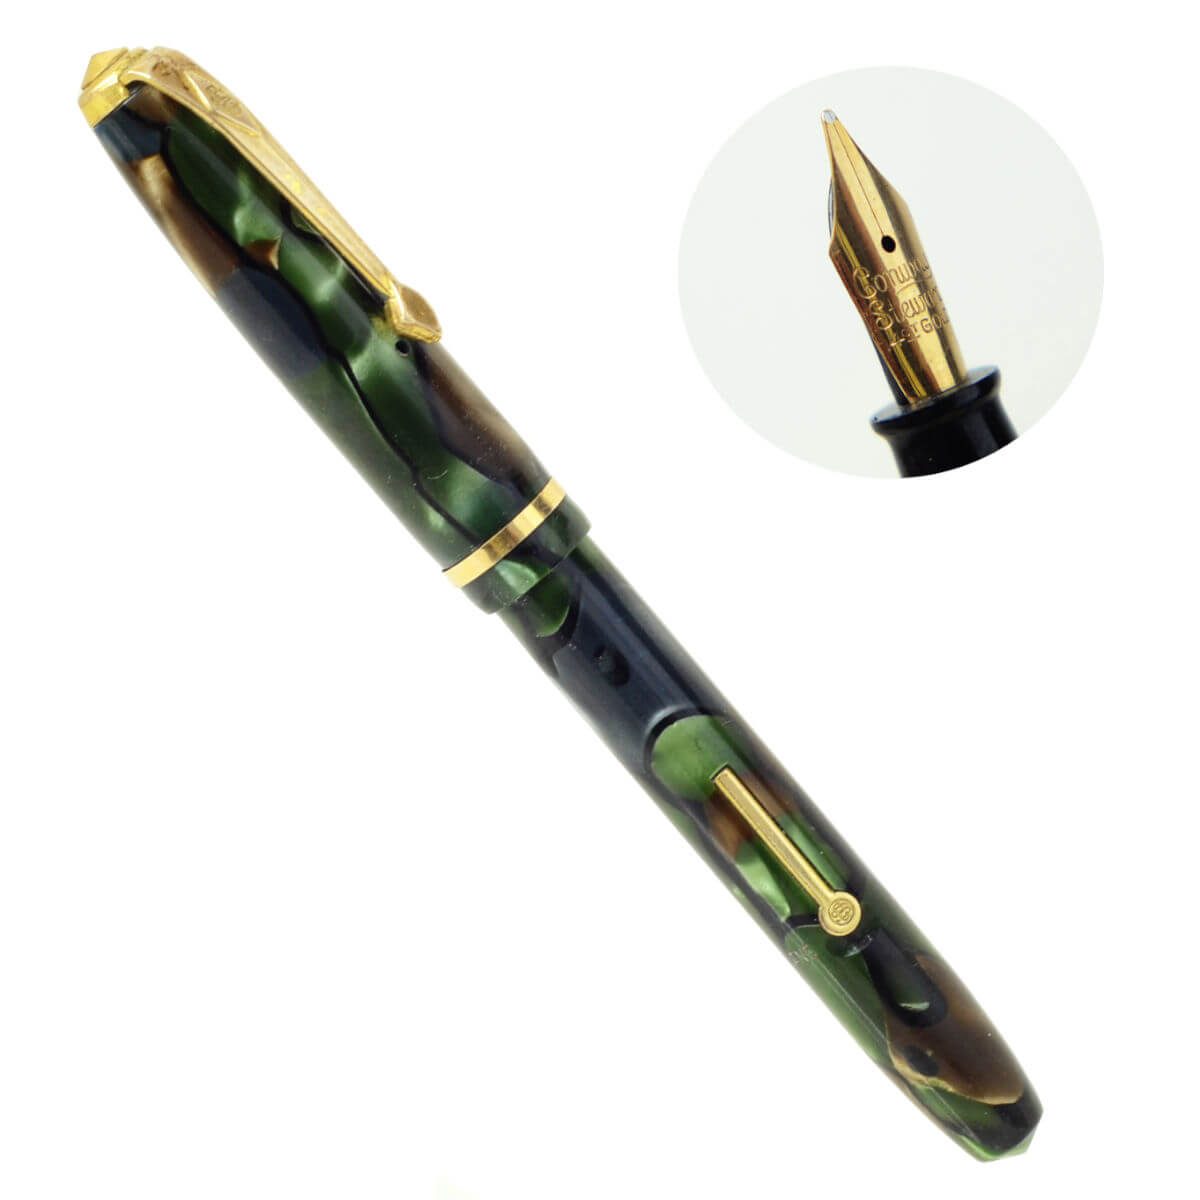 Vintage conway stewart dinkie 550 mini lever filler fountain pen – 14K gold flex nib